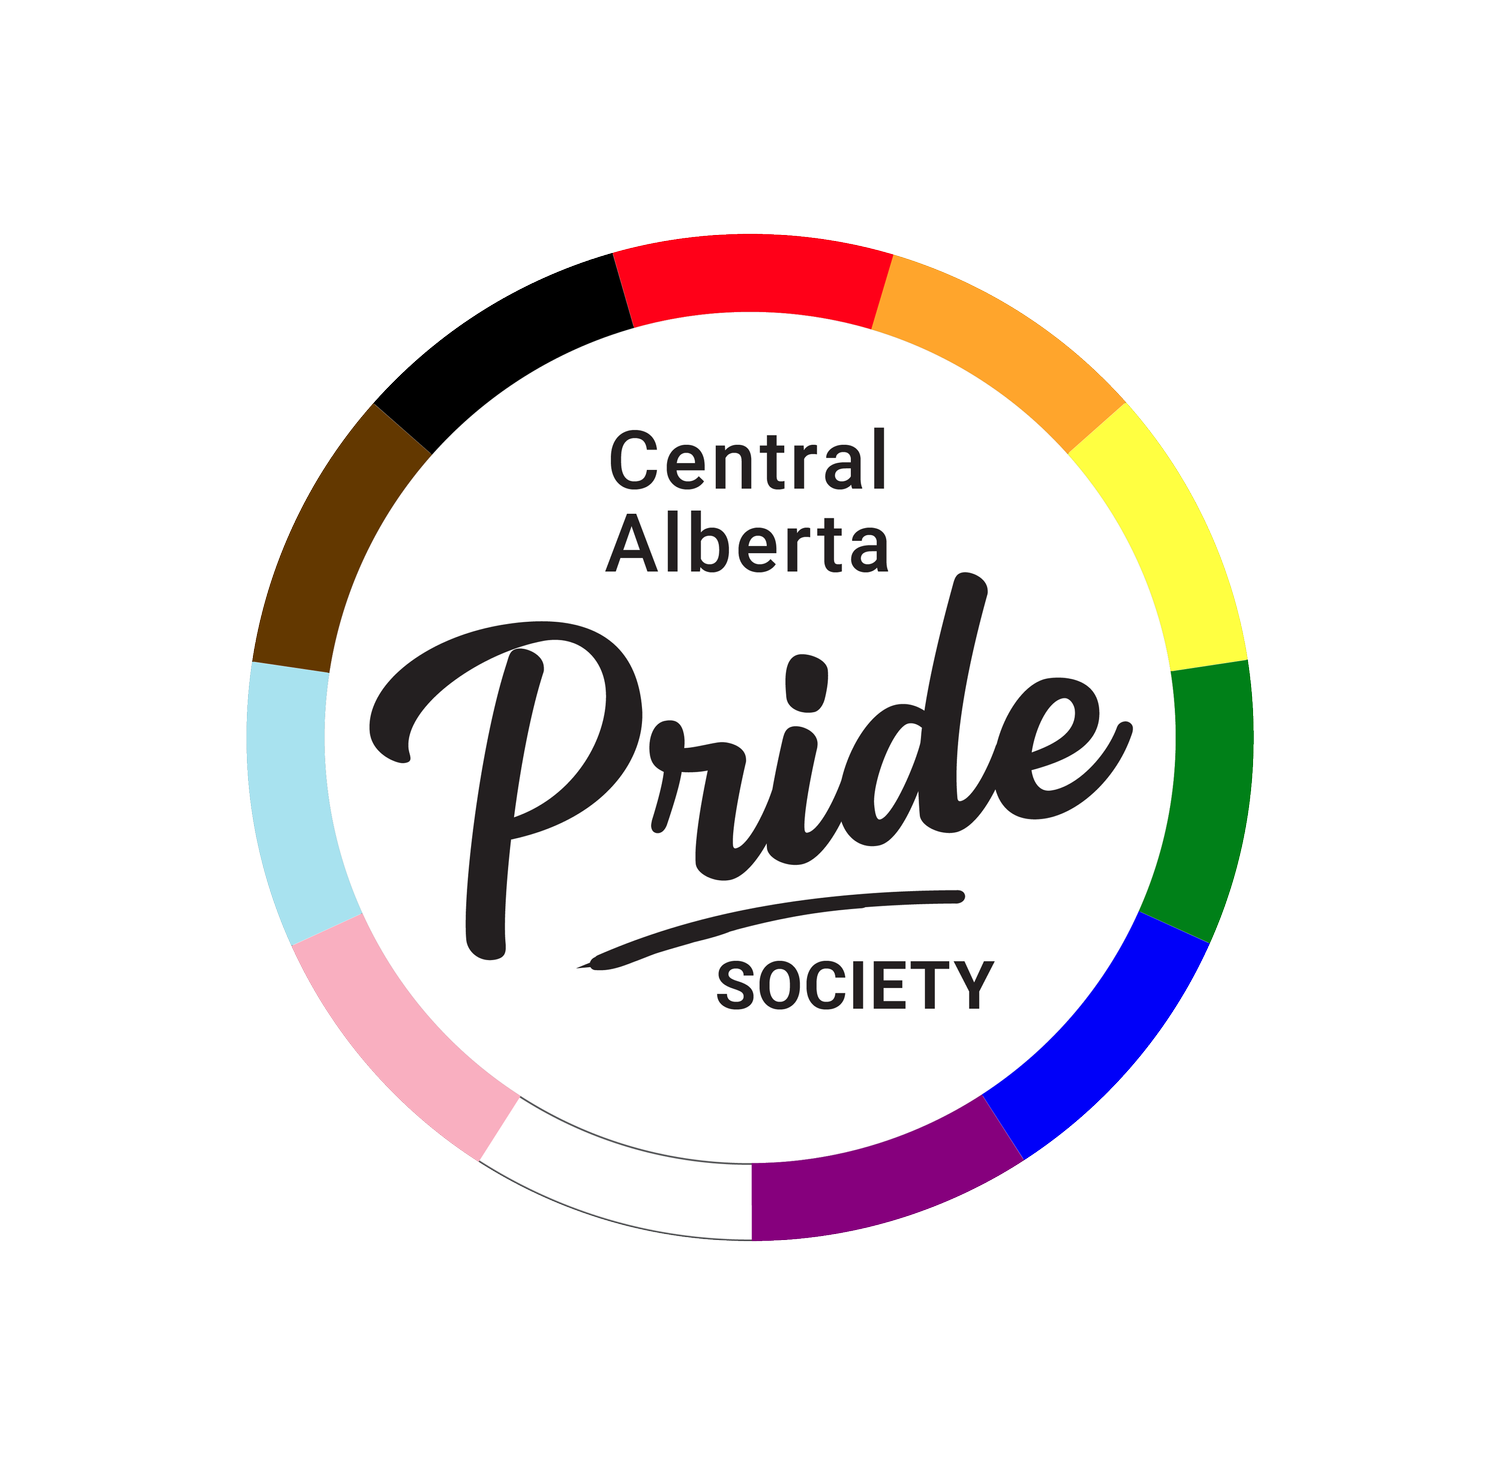 Central Alberta Pride Society